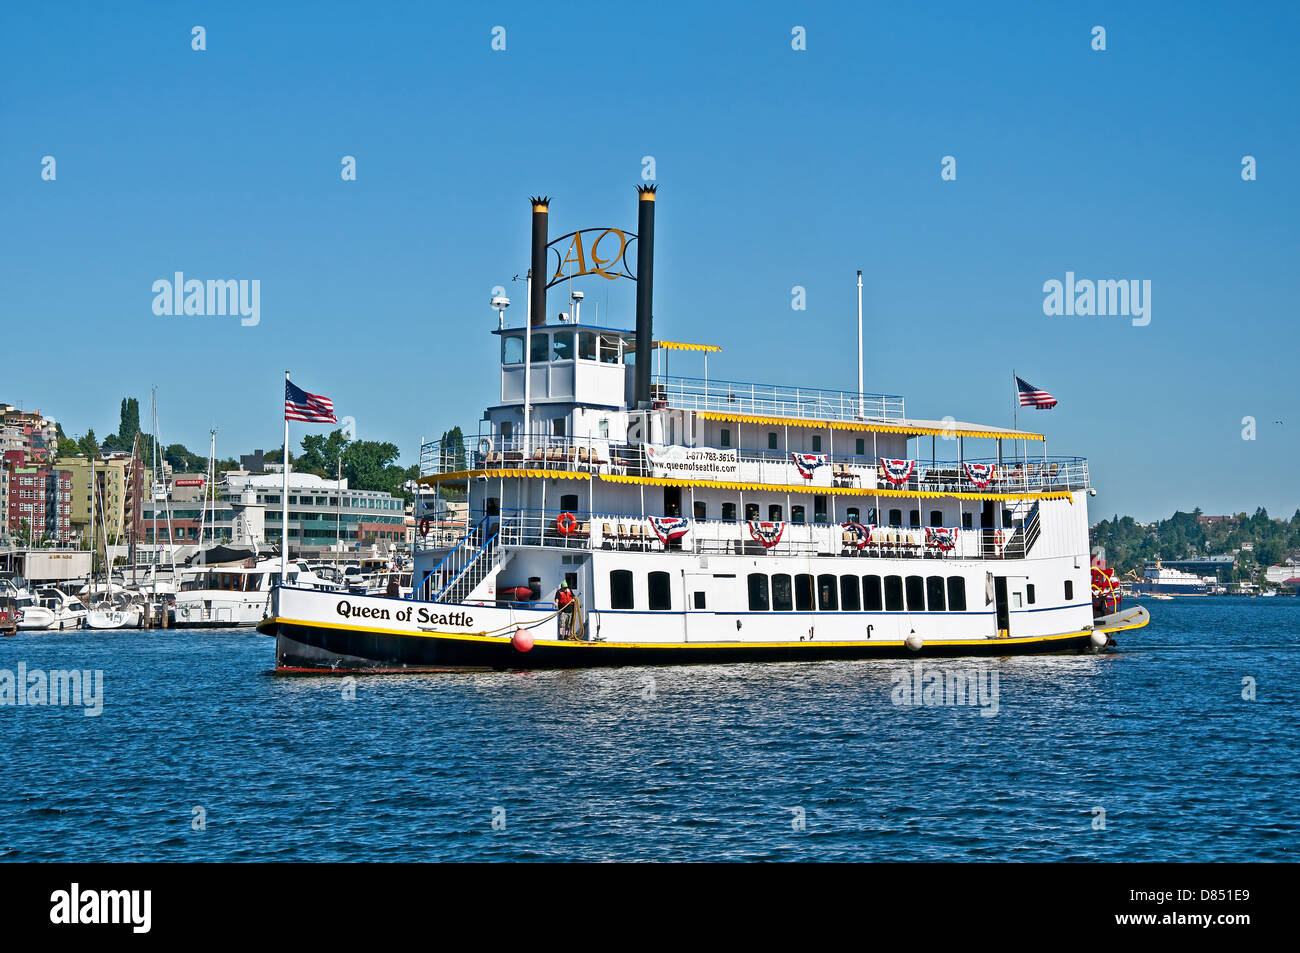 Dampfantrieb Paddelboot namens Queen of Seattle, bietet Touren des Lake Union während des Unterrichts Geschichte dieses Boot Rolle. Stockfoto